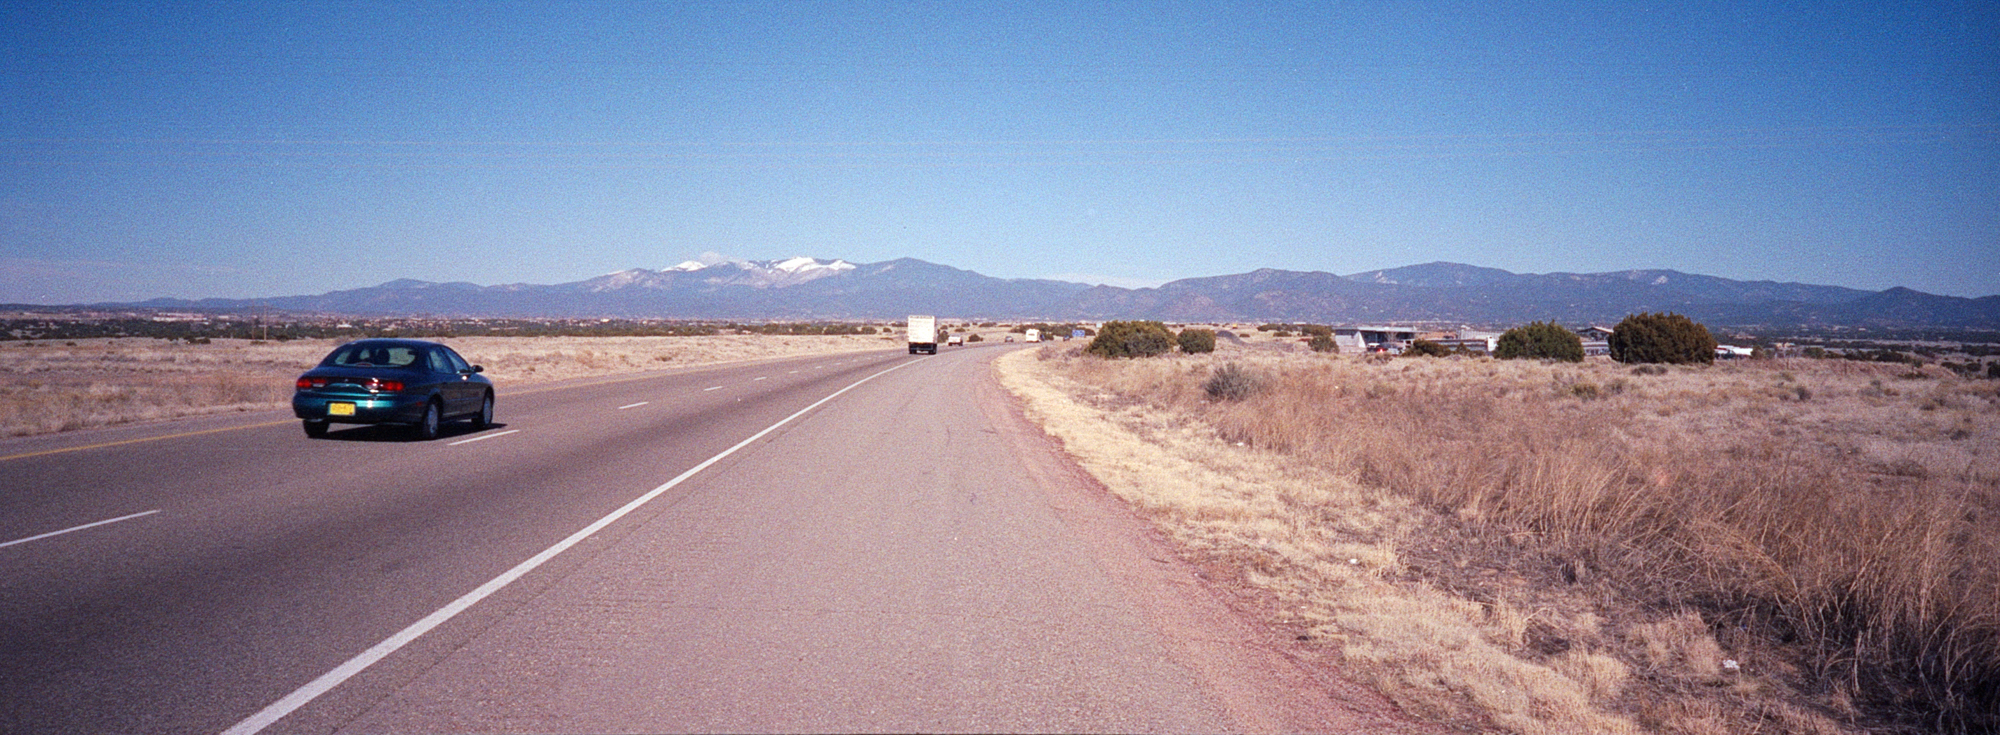 Wojciech Fangor: [Interstate 25], 1998